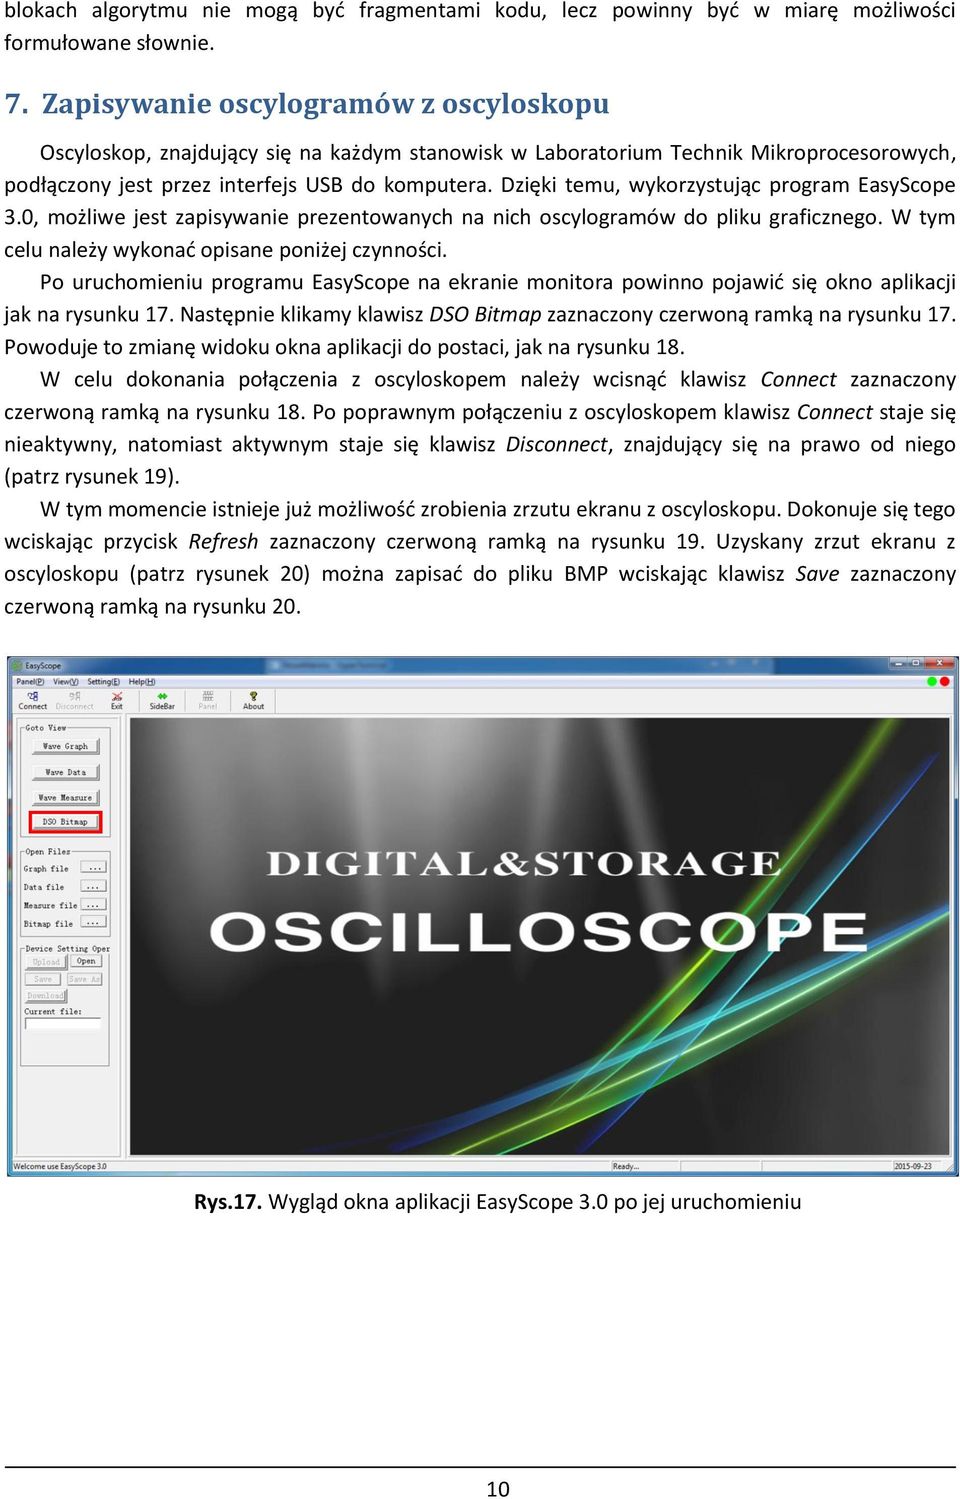 Dzięki temu, wykorzystując program EasyScope 3.0, możliwe jest zapisywanie prezentowanych na nich oscylogramów do pliku graficznego. W tym celu należy wykonać opisane poniżej czynności.